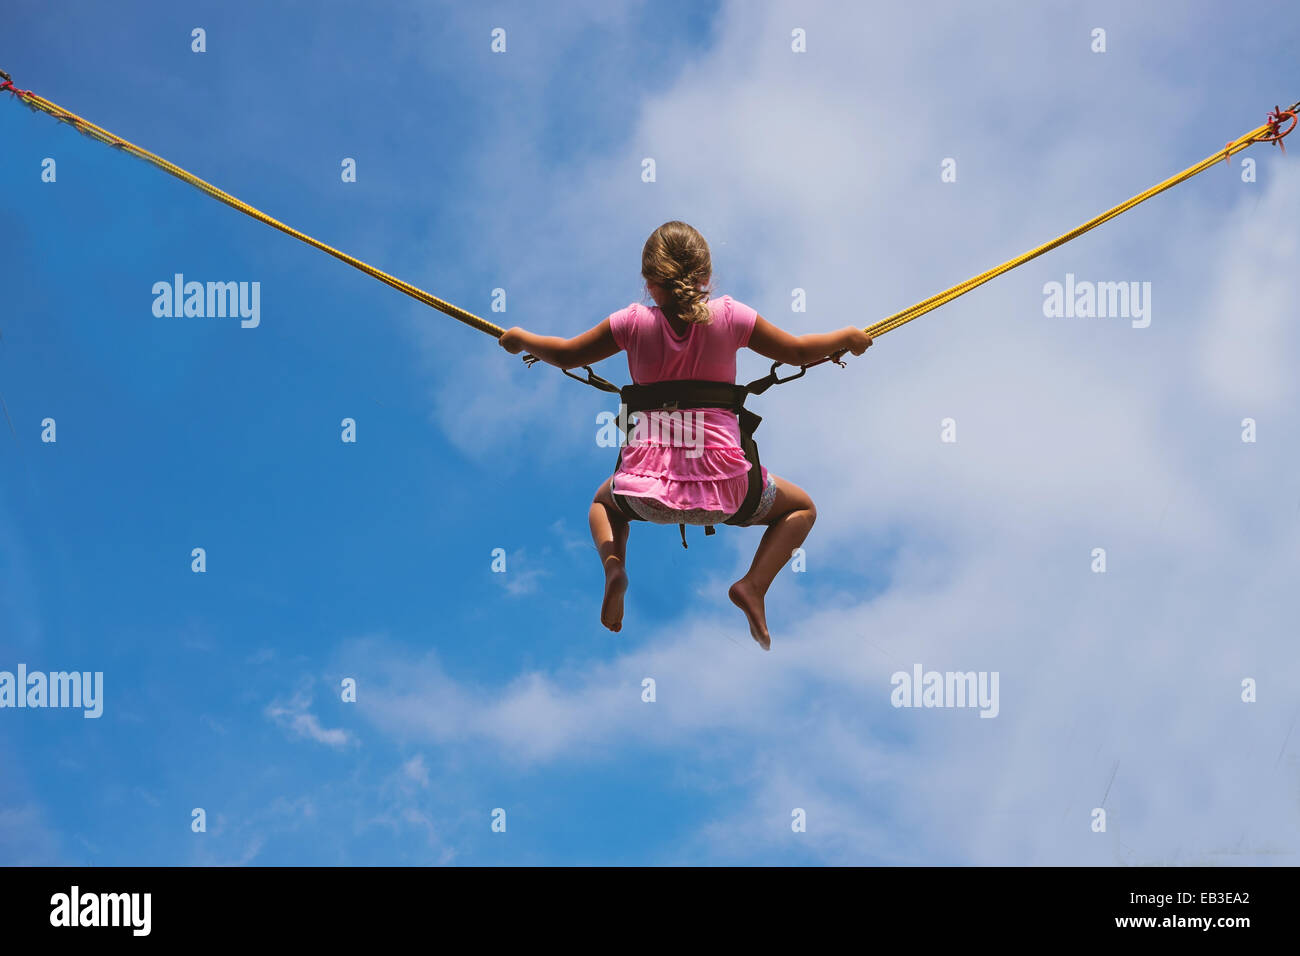 Harness bungee -Fotos und -Bildmaterial in hoher Auflösung - Seite 2 - Alamy